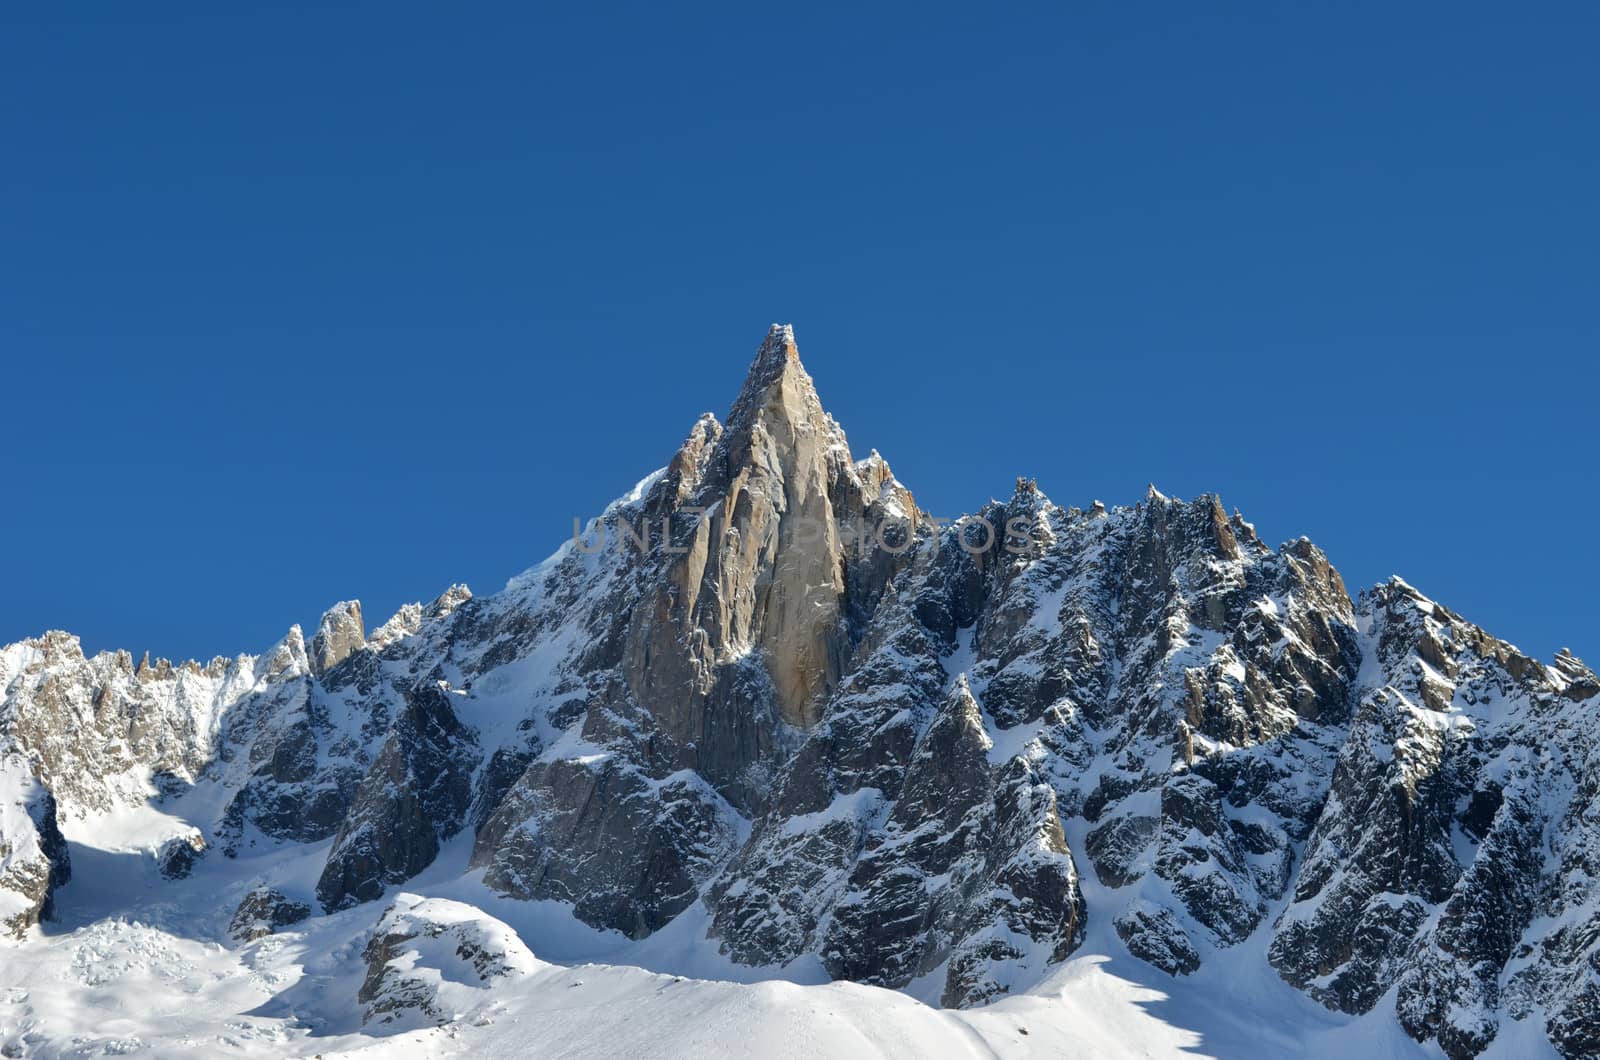 The Aiguilles du Midi mountain range in Chamonix by artofphoto